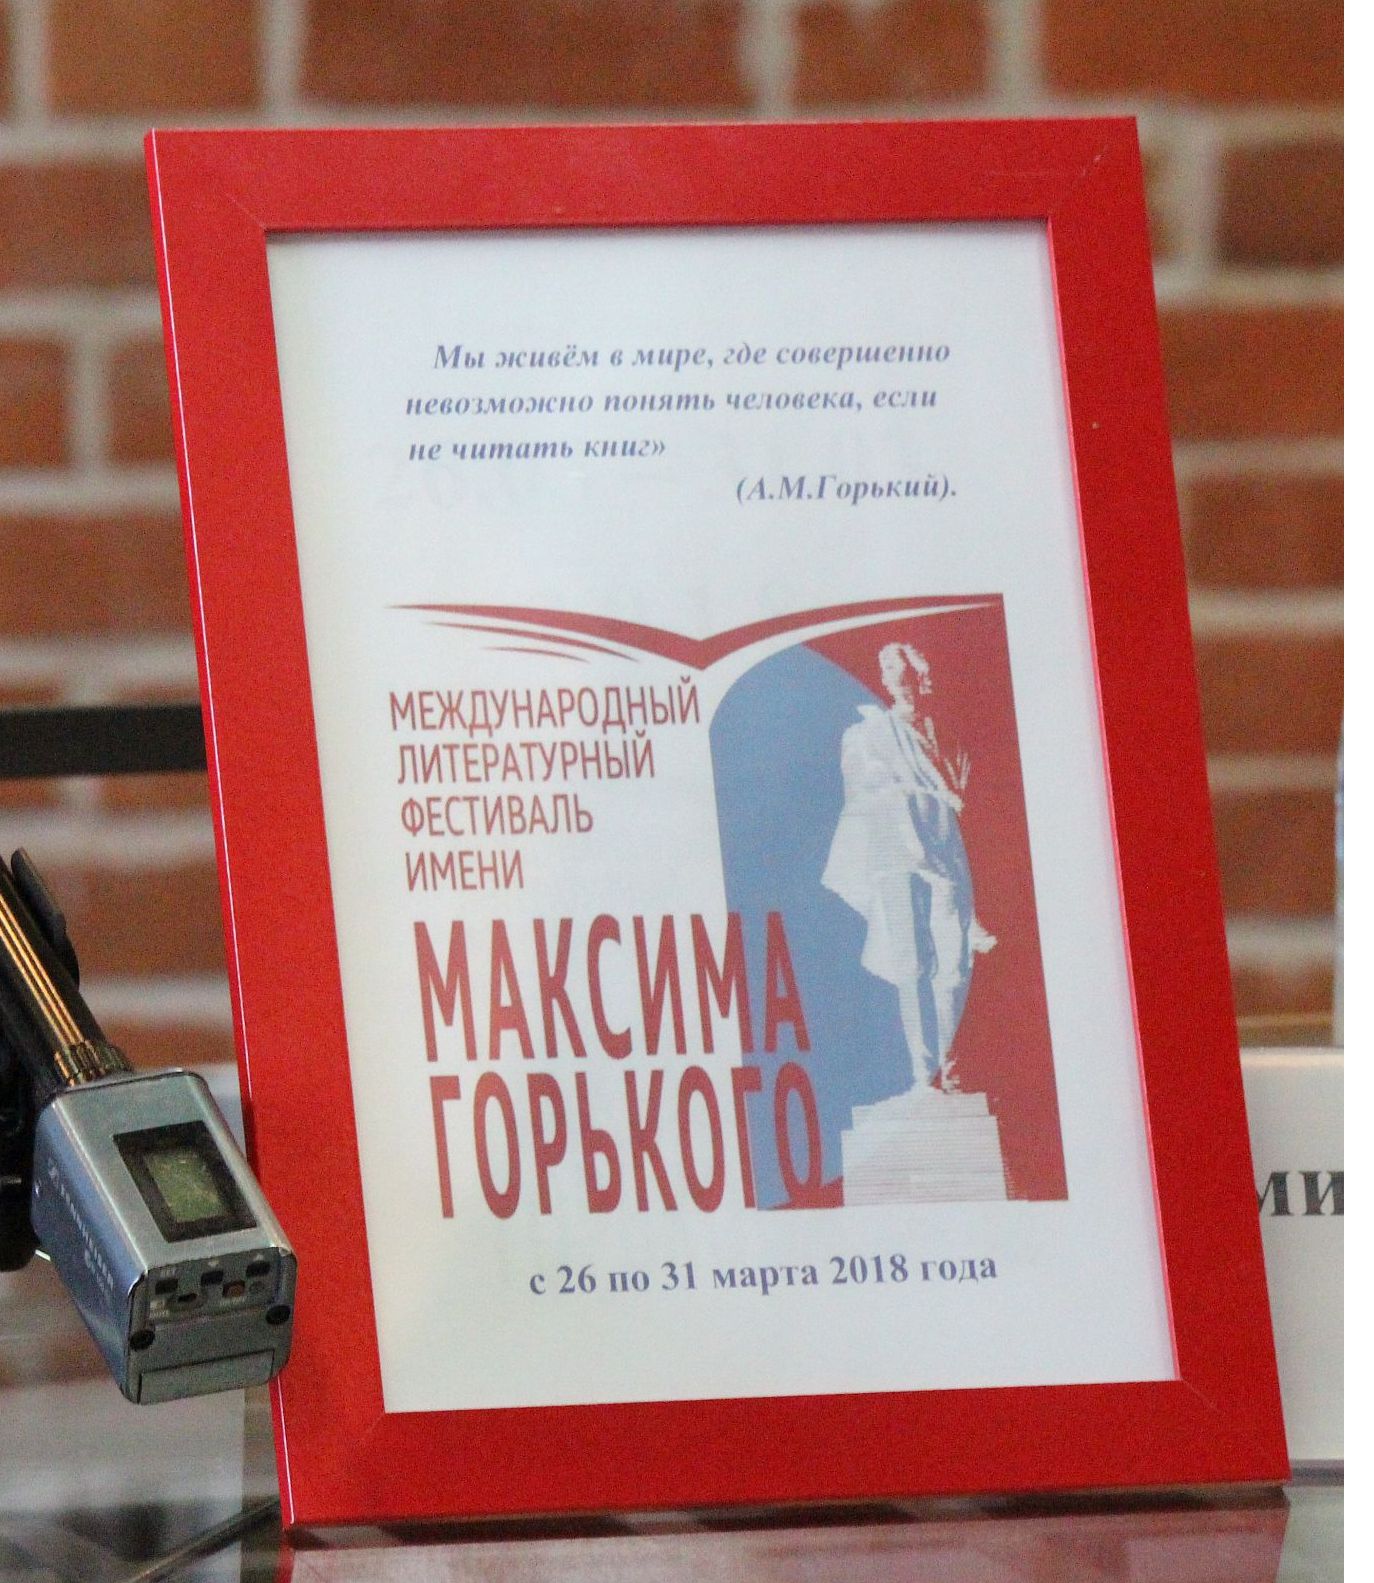 Международный литературный фестиваль имени Горького состоится в Нижнем Новгороде - фото 1